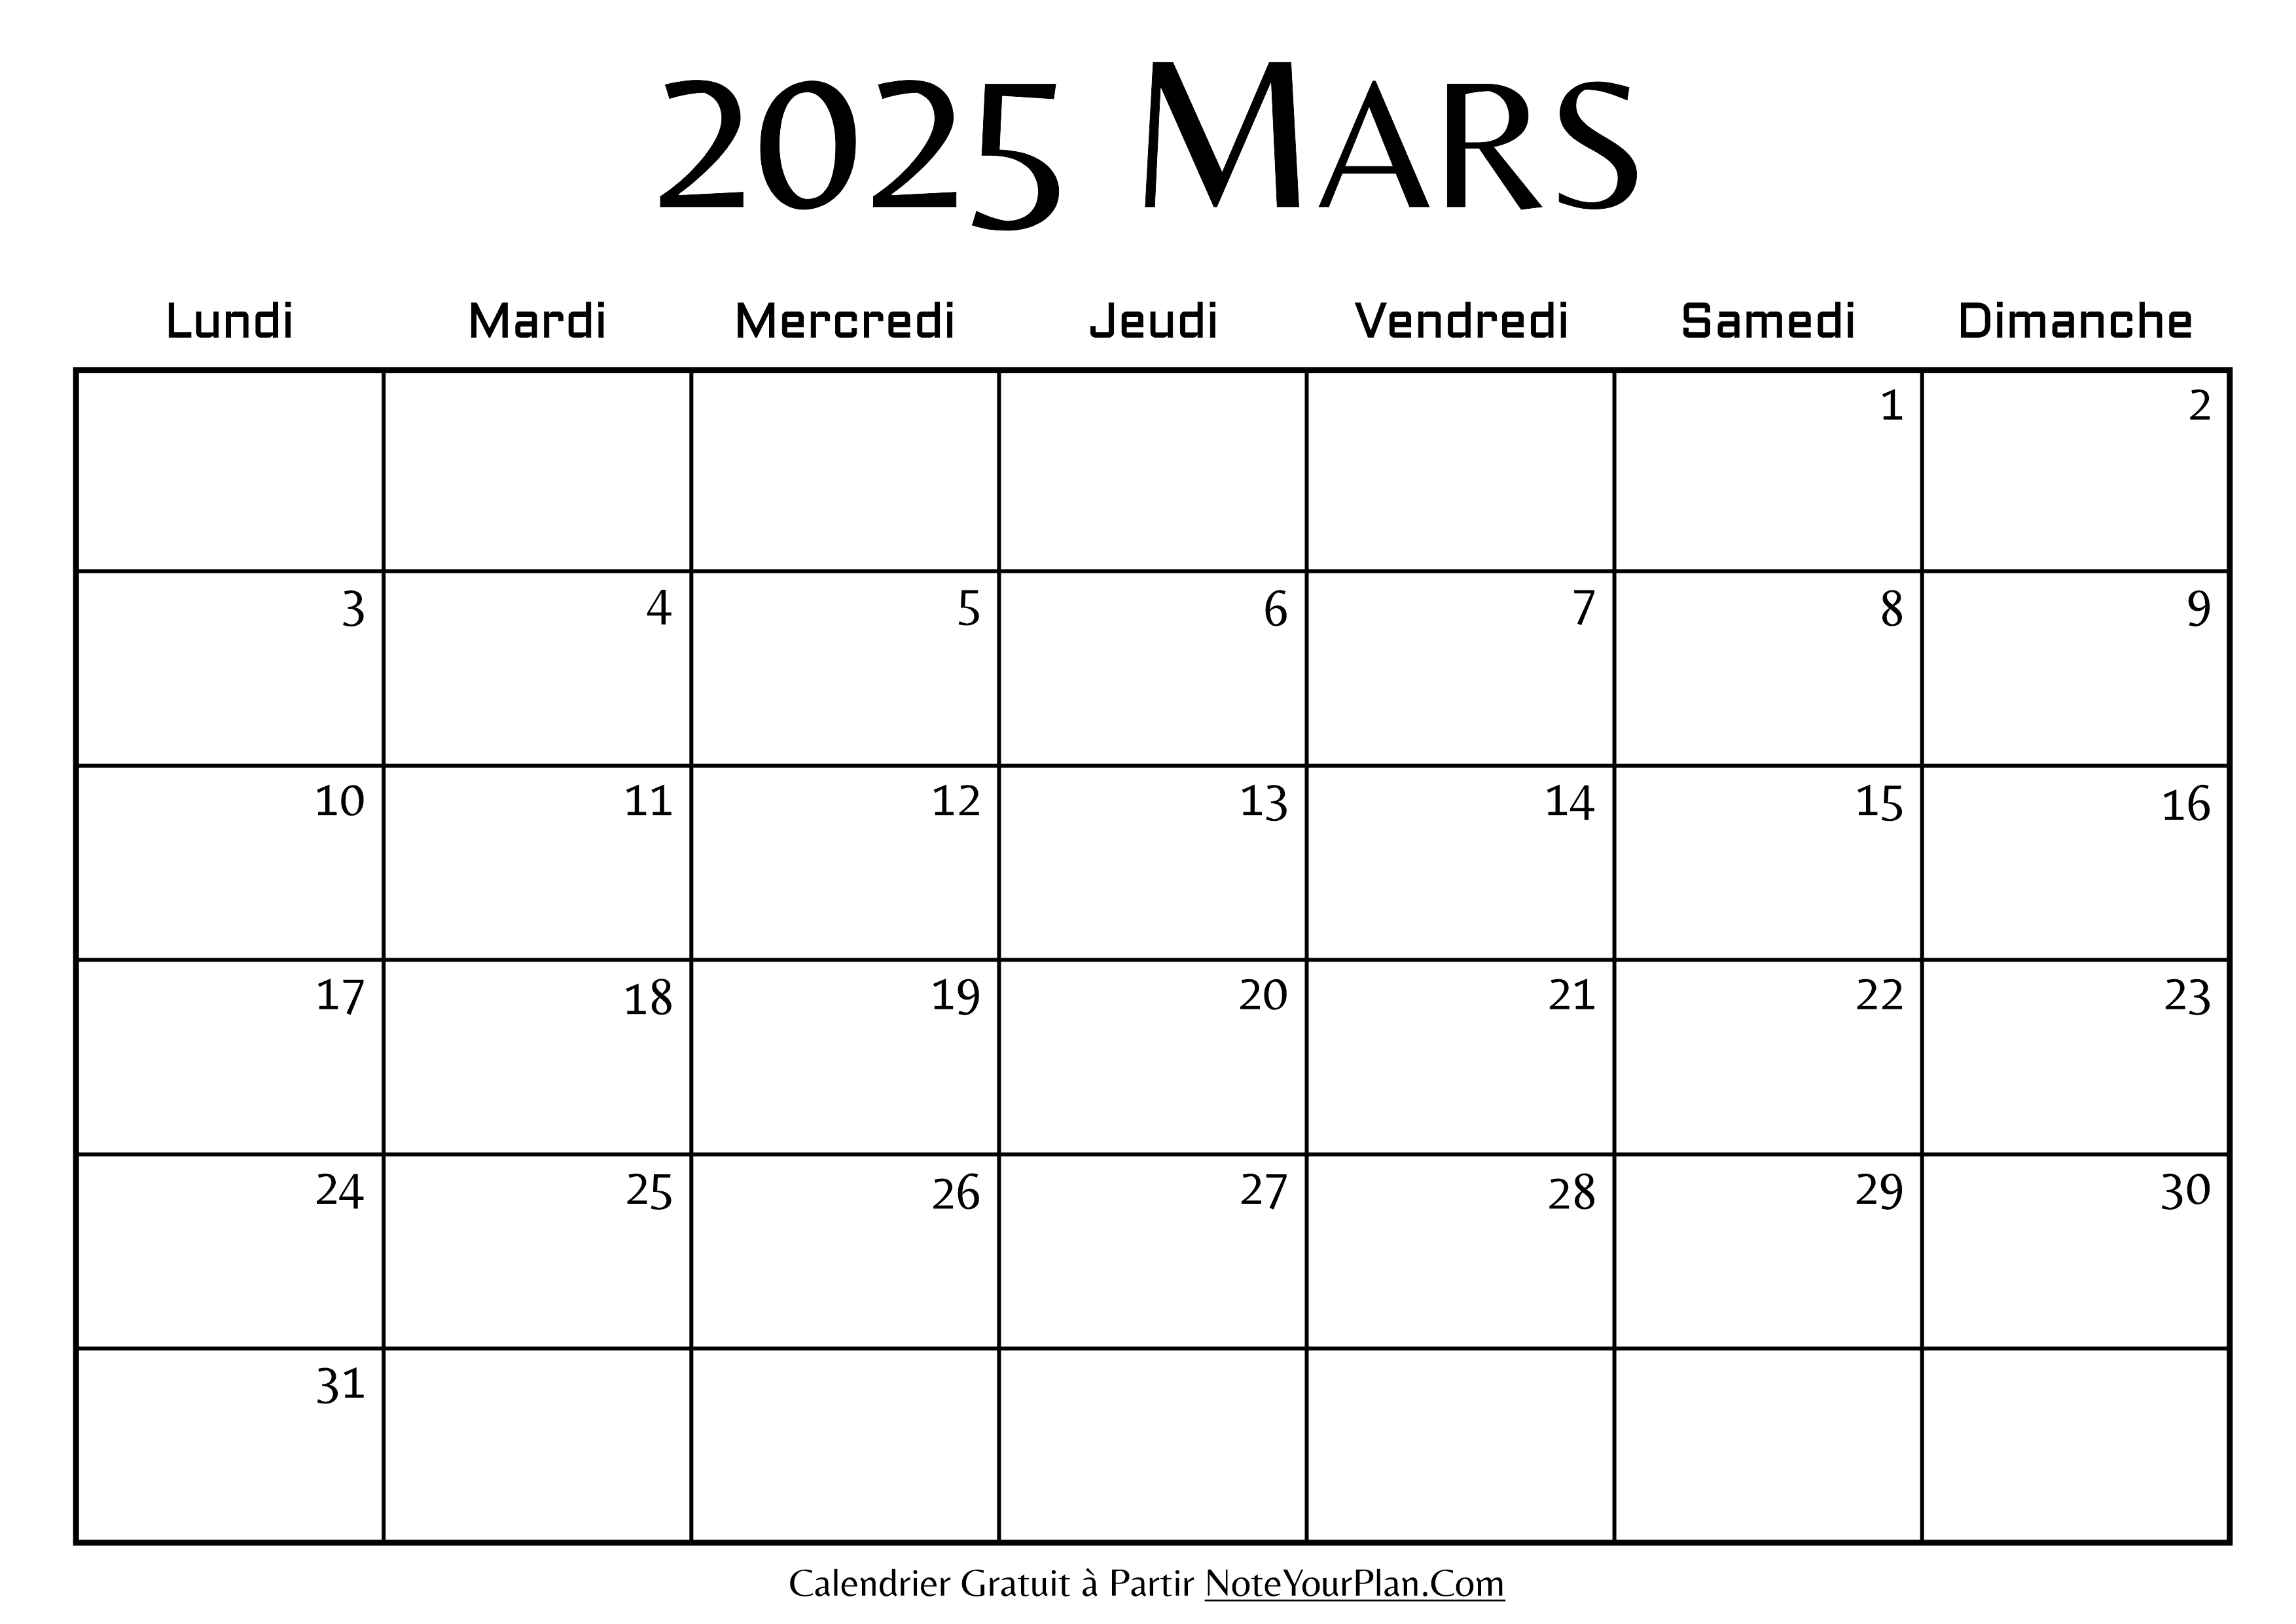 Calendrier de Mars 2025